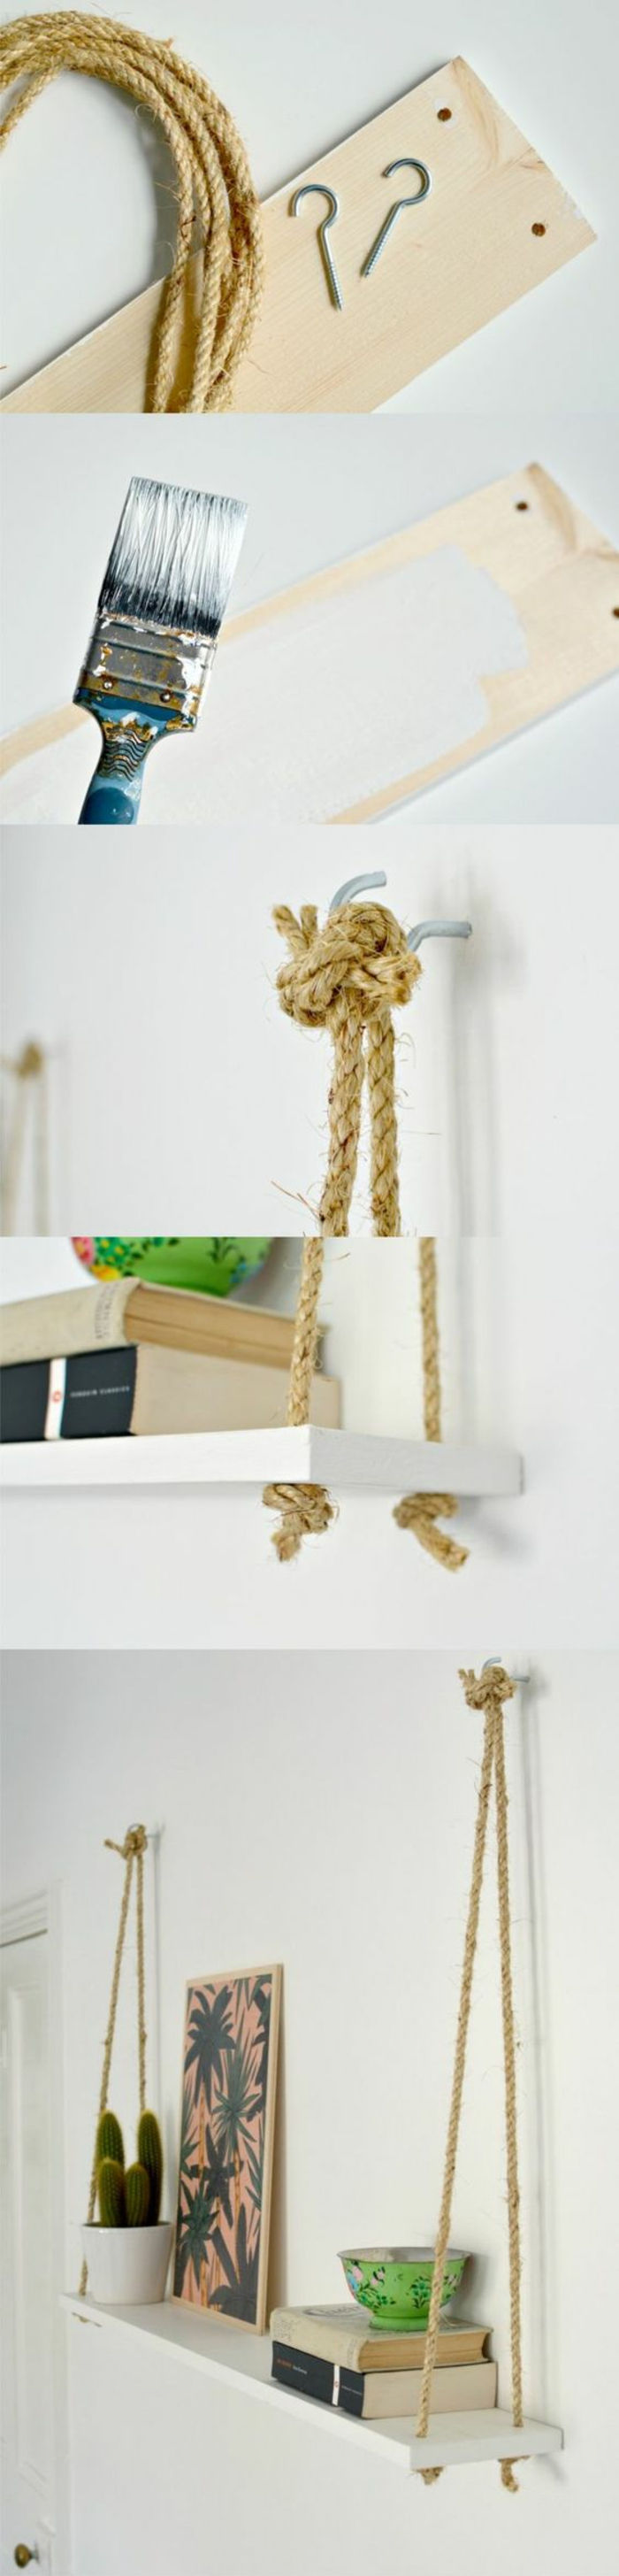 13-parede prateleira de madeira-cordas-suspensão-prateleiras-diy-cor-b + cher-imagem-pdlanzen